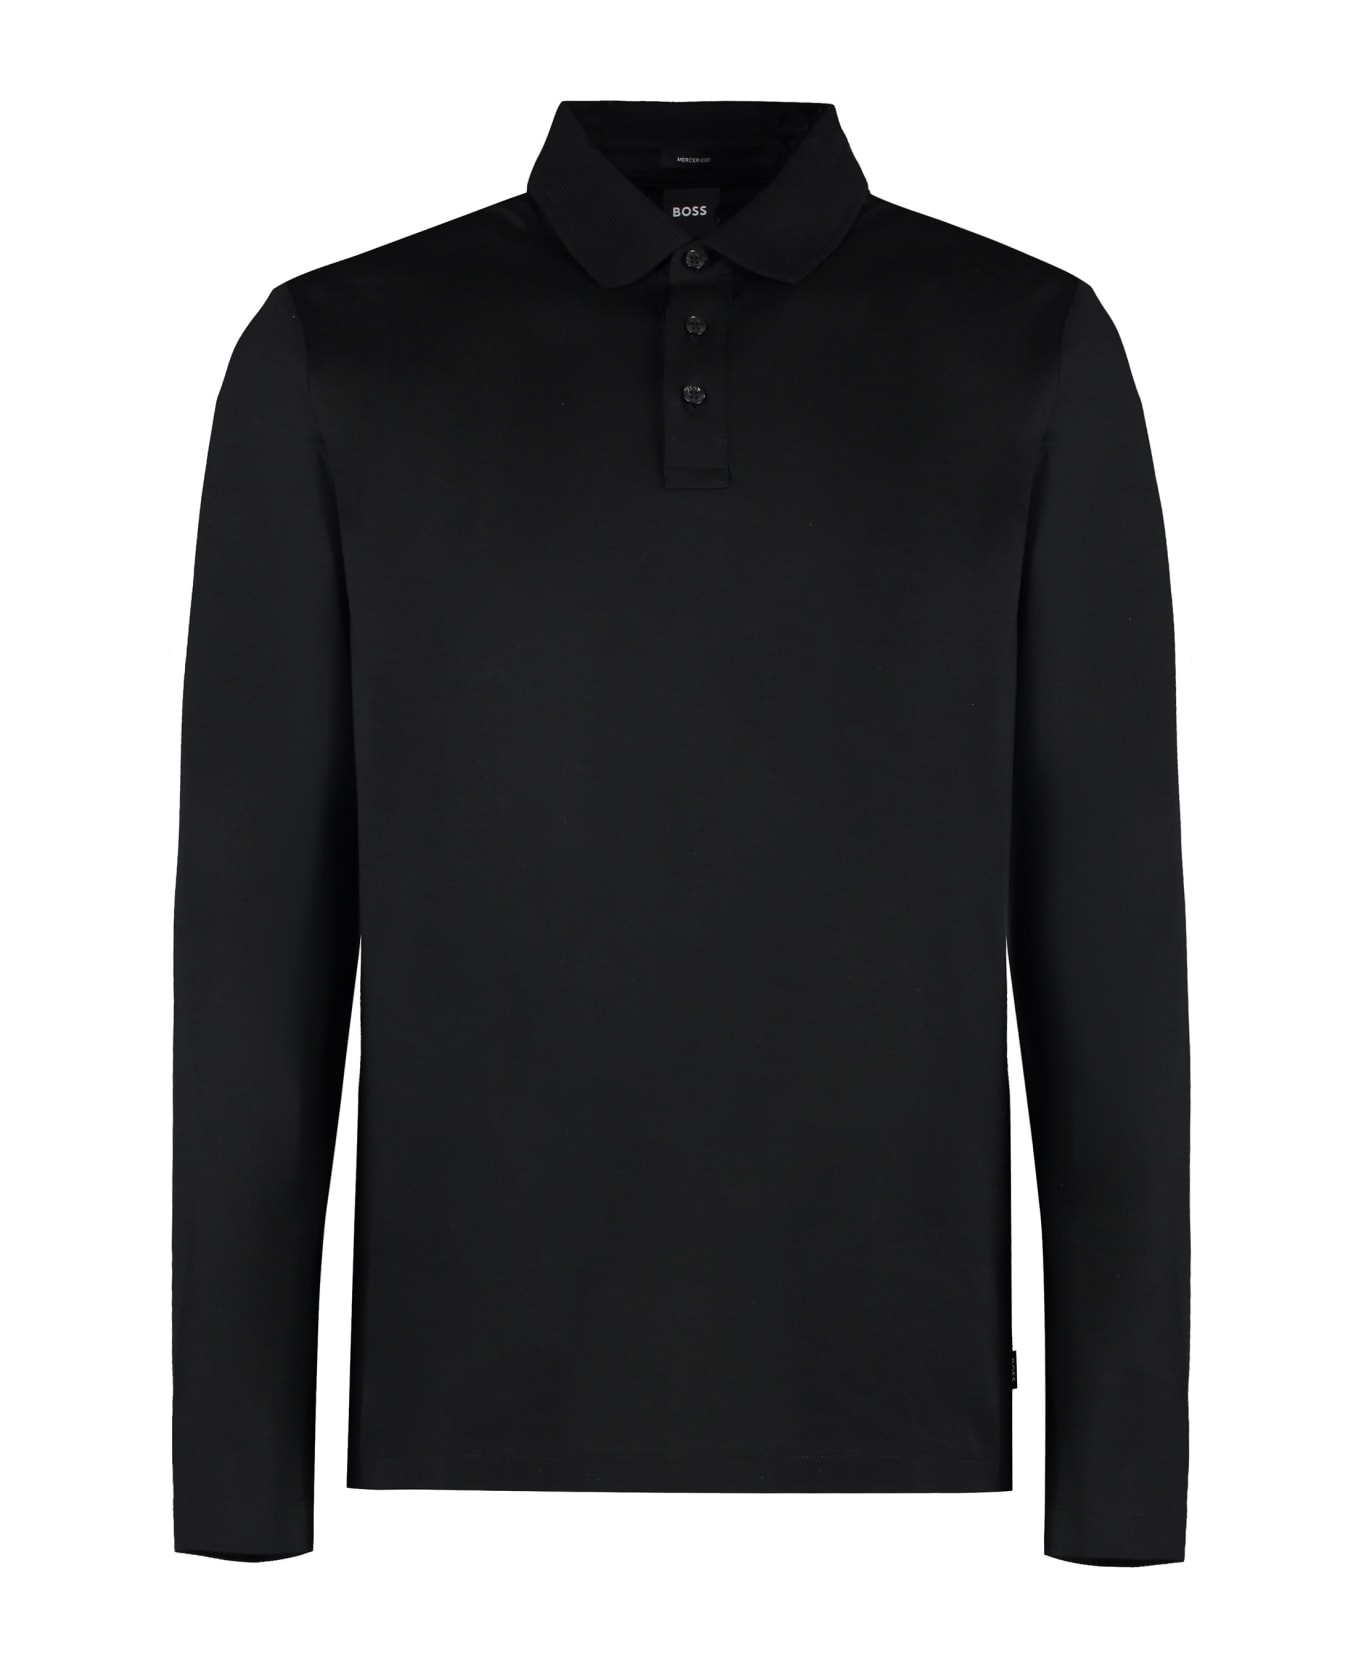 Hugo Boss Long Sleeve Cotton Polo Shirt - black